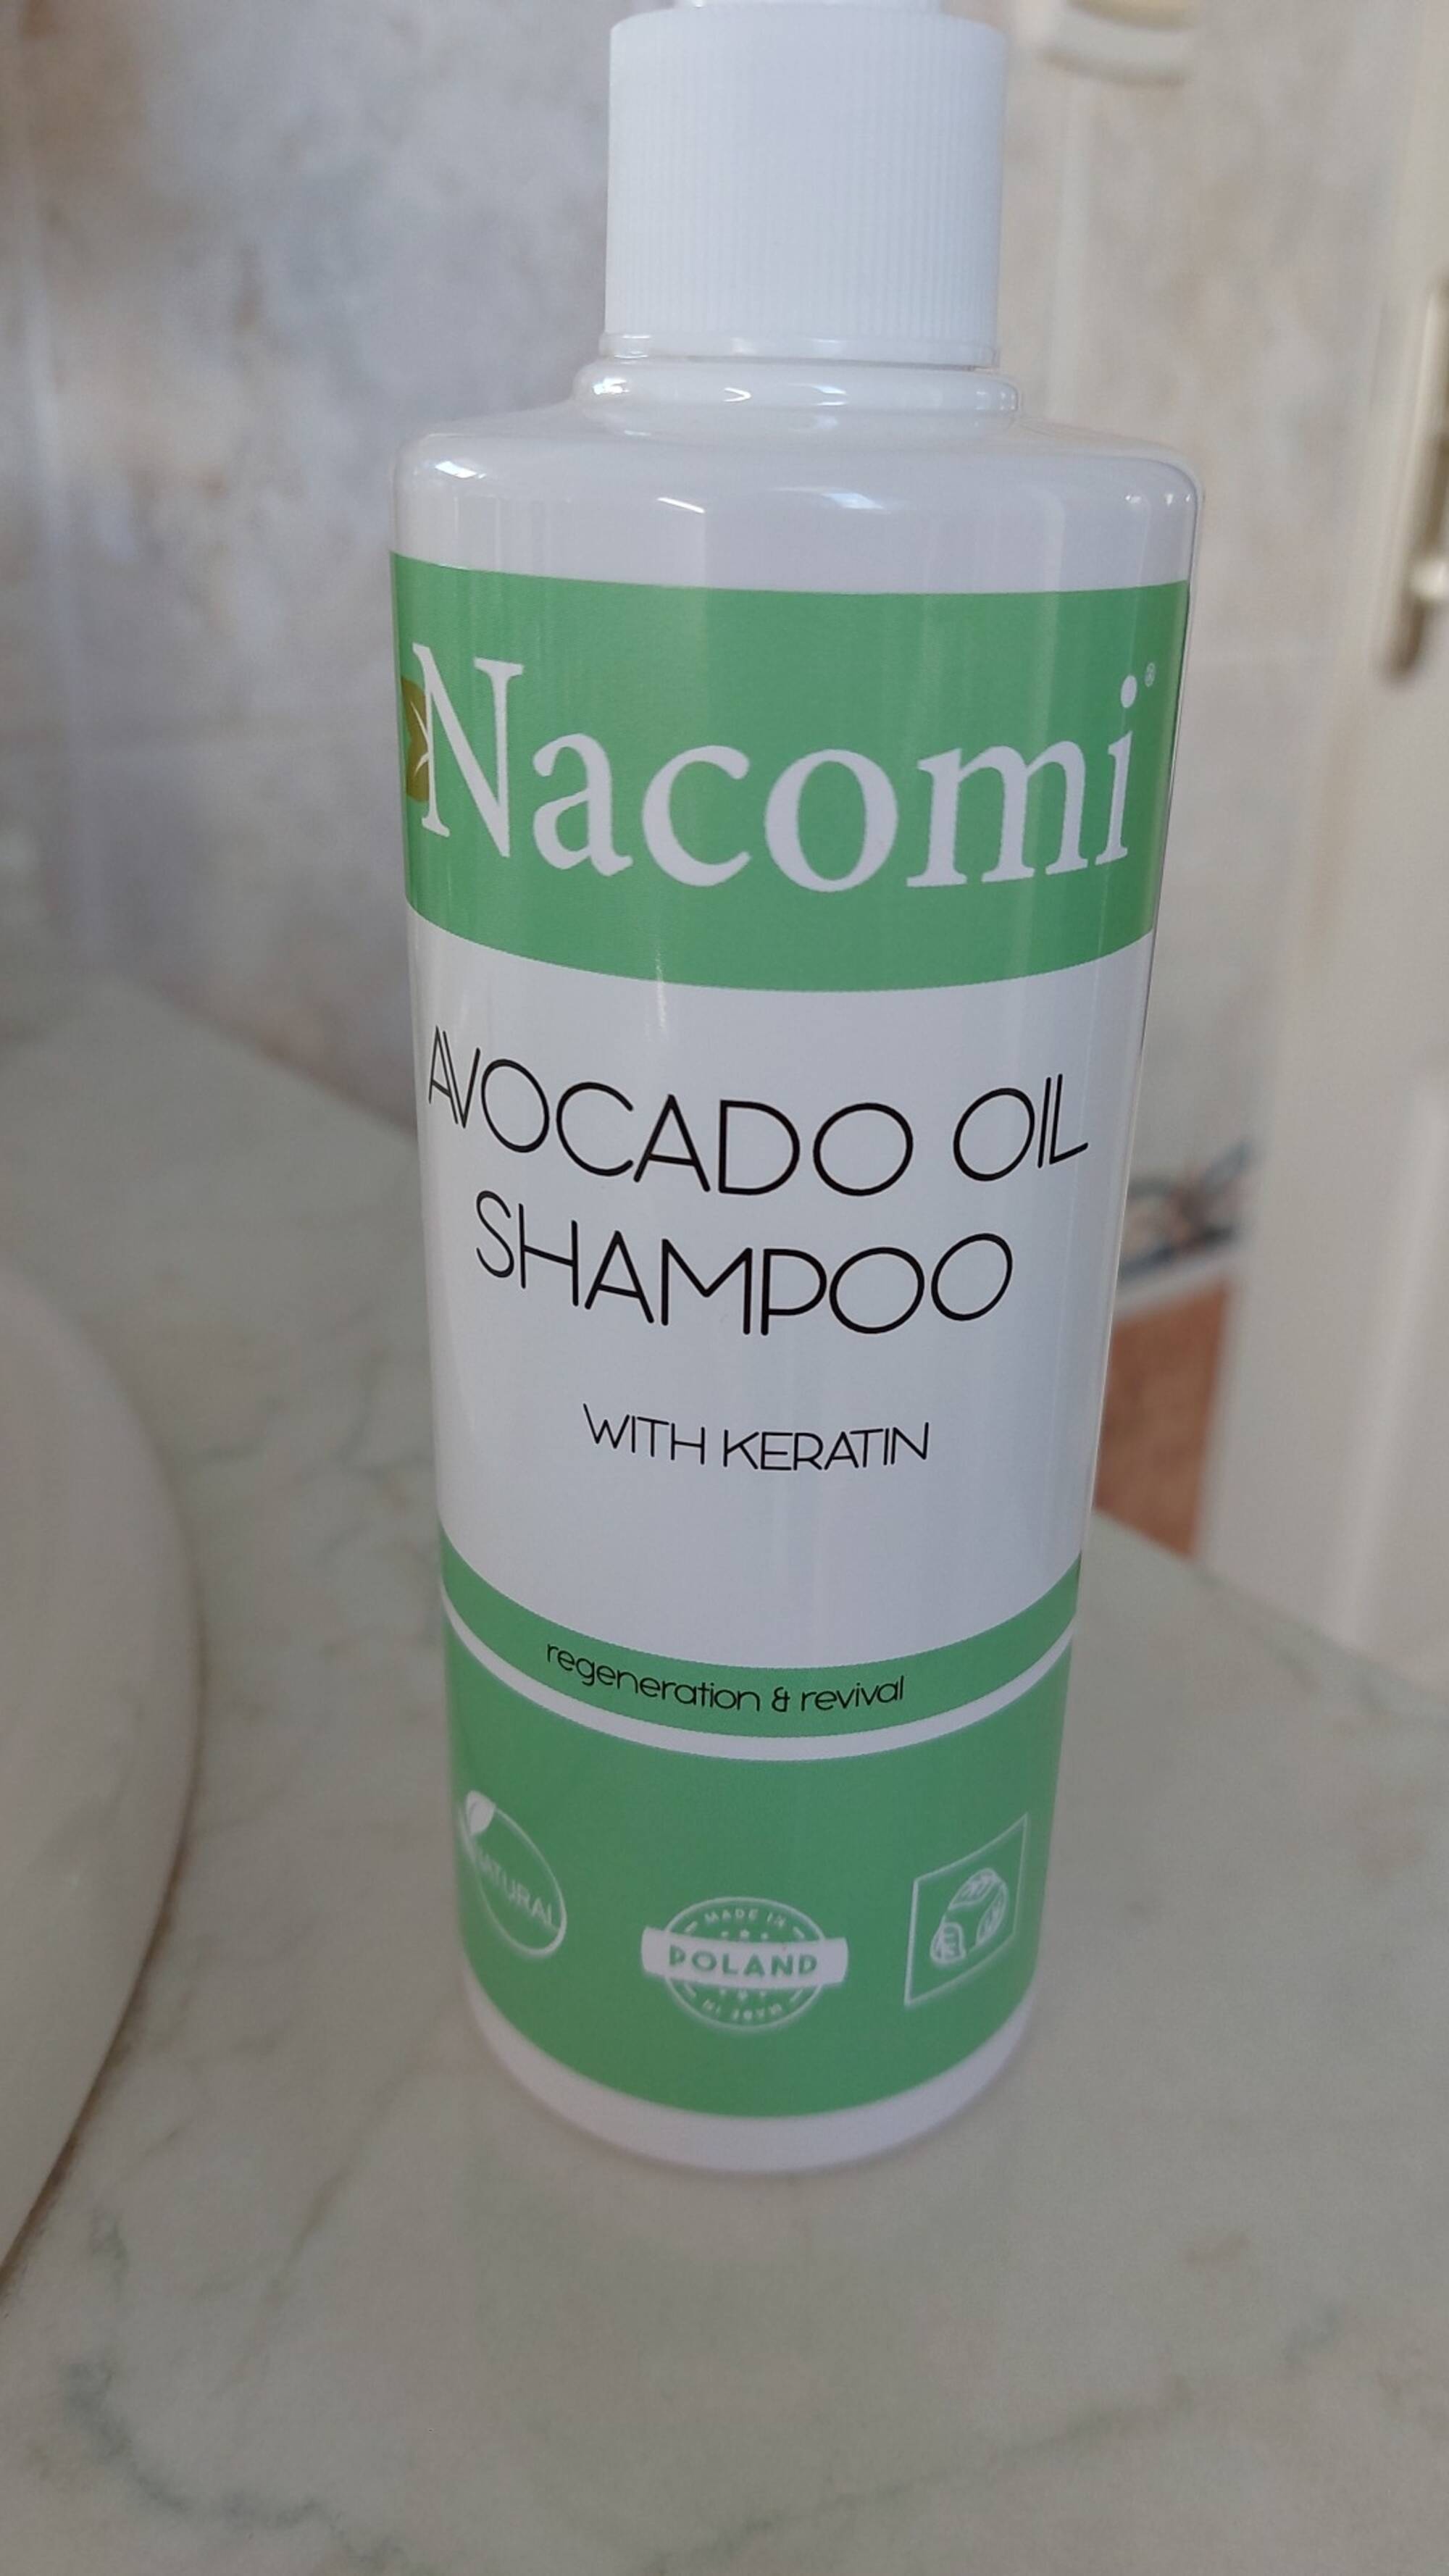 NACOMI - Avocado oil shampoo with keratin